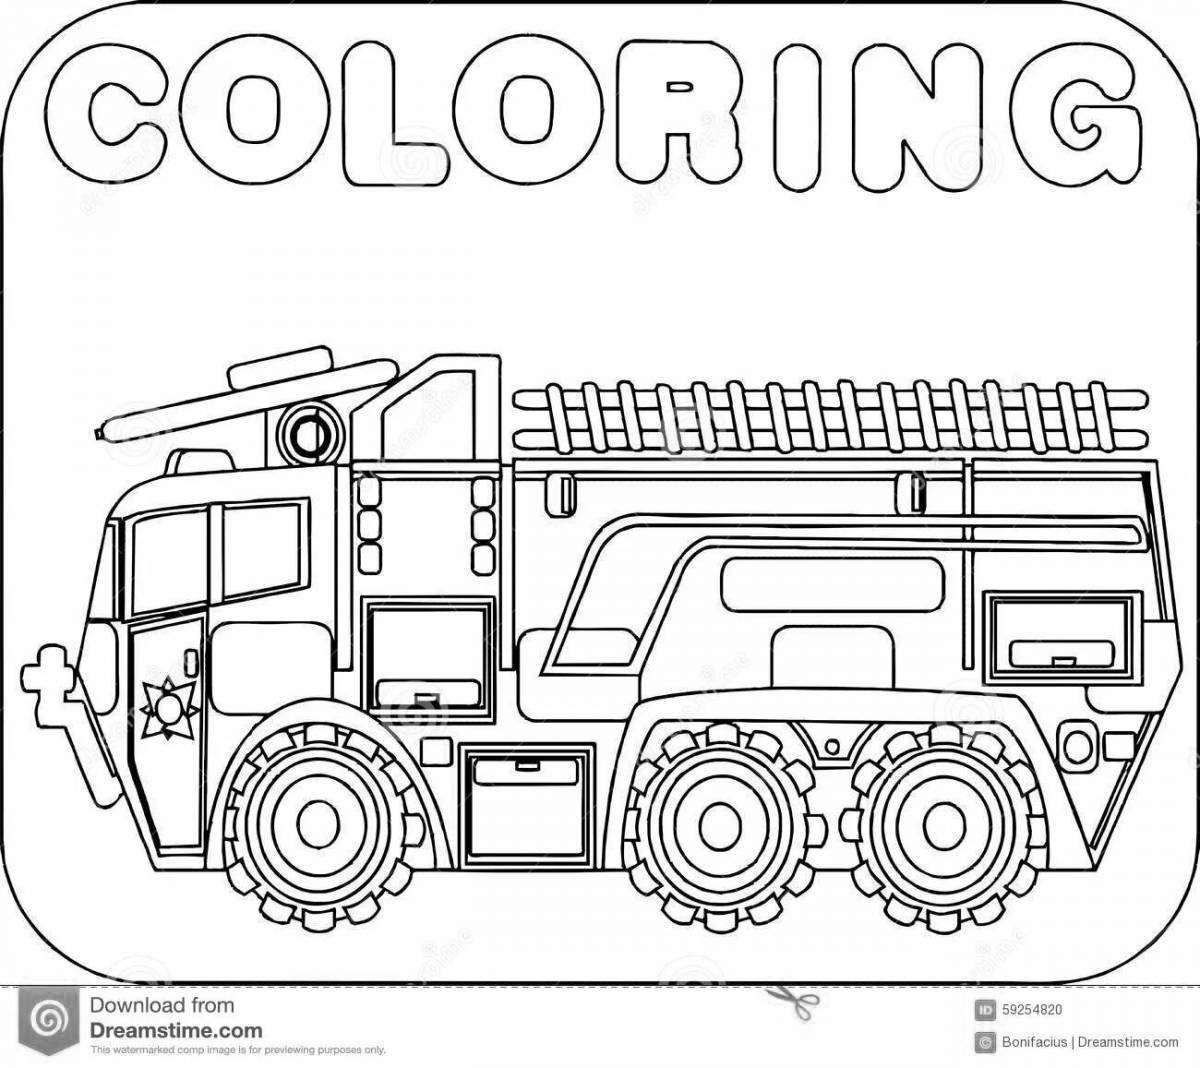 Яркая страница раскраски пожарной машины для детей 6-7 лет